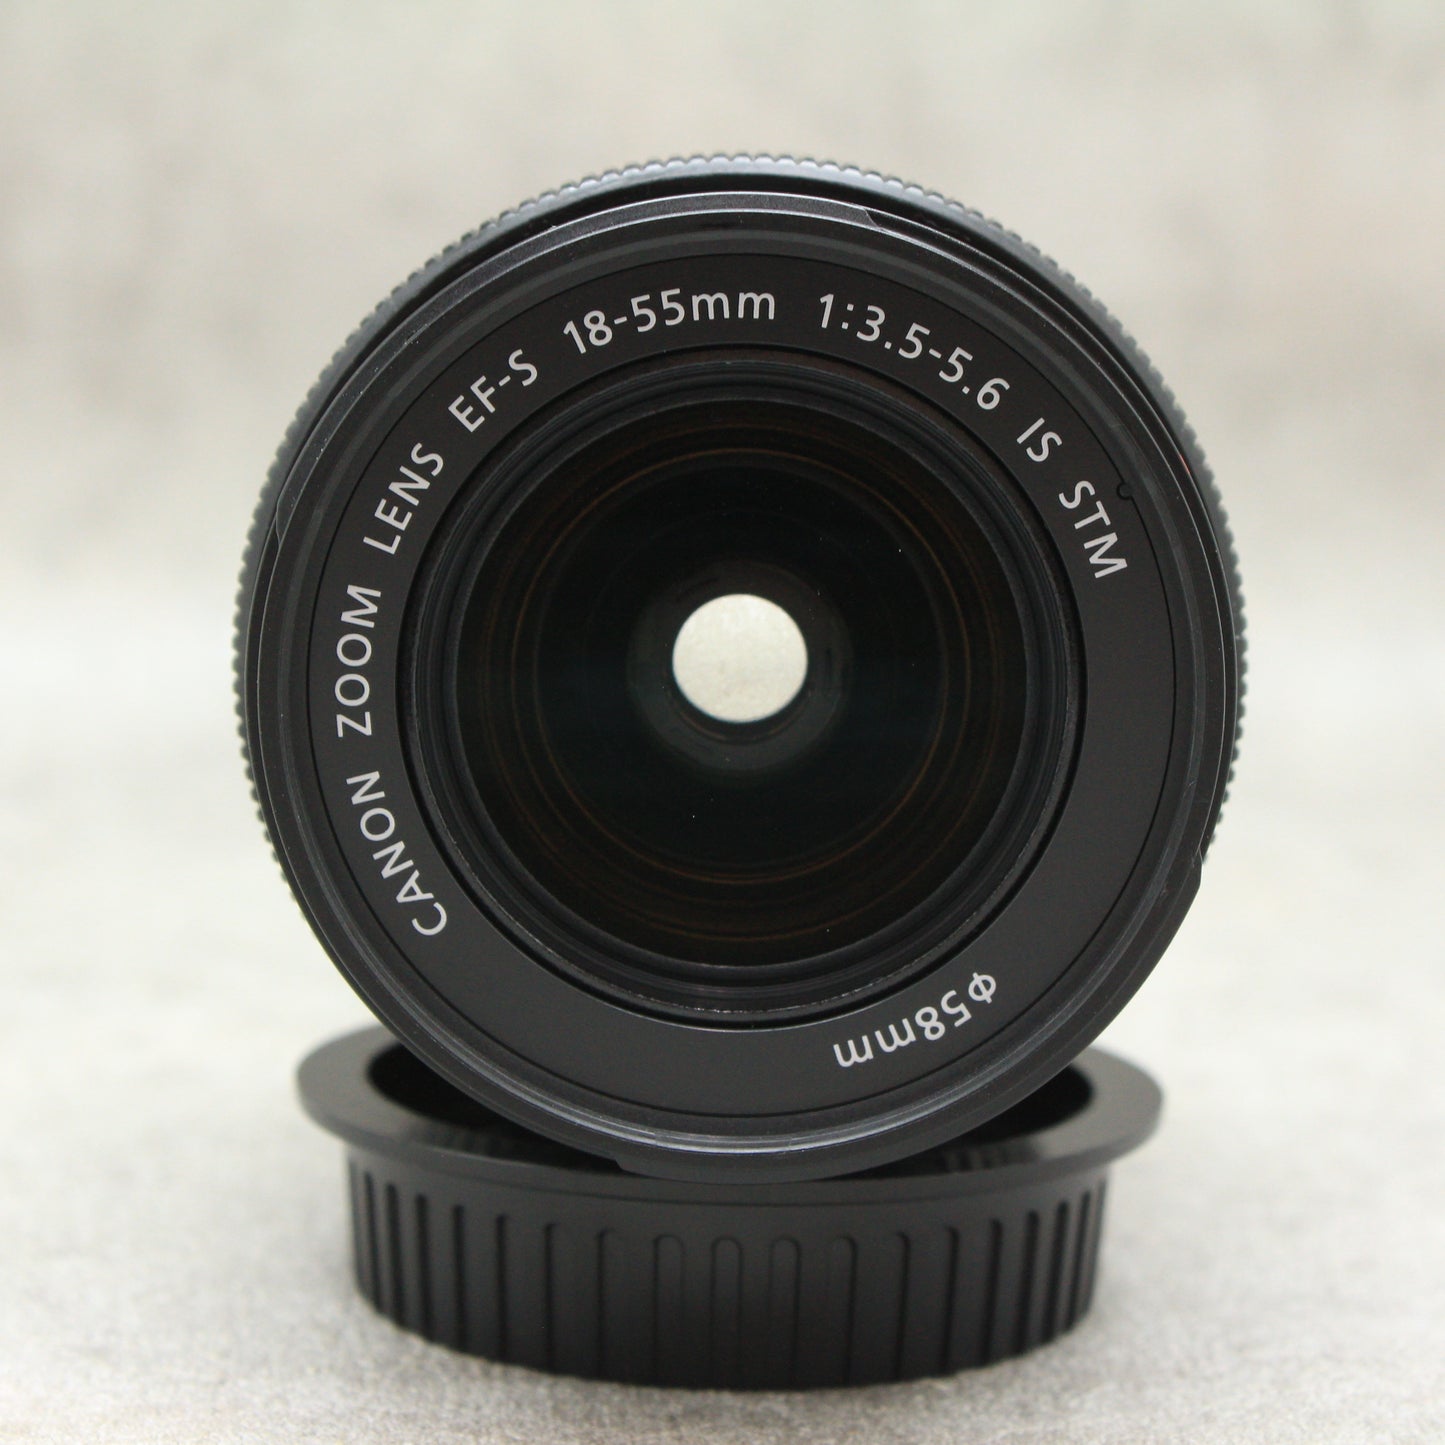 中古品Canon EOS kissX7i /18‐55mm